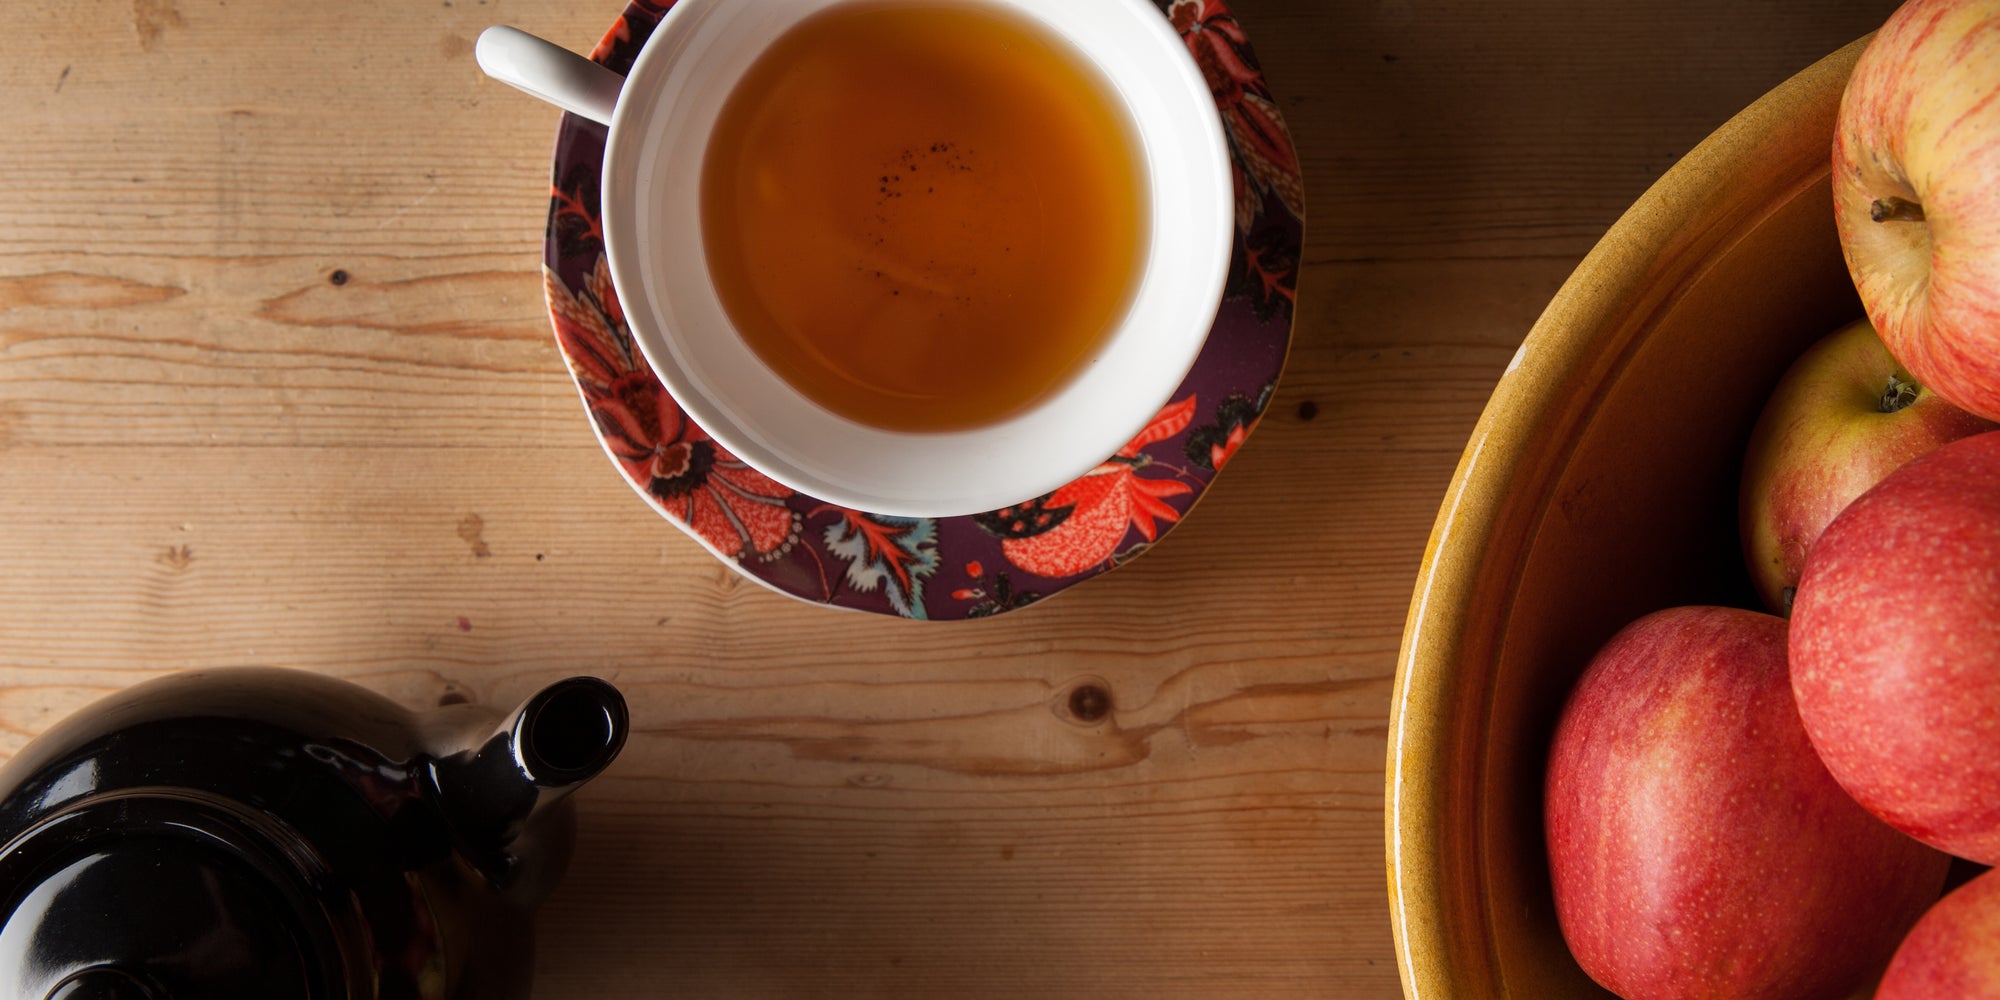 Kinnettles Gold Scottish Grown Tea - a Closer Look